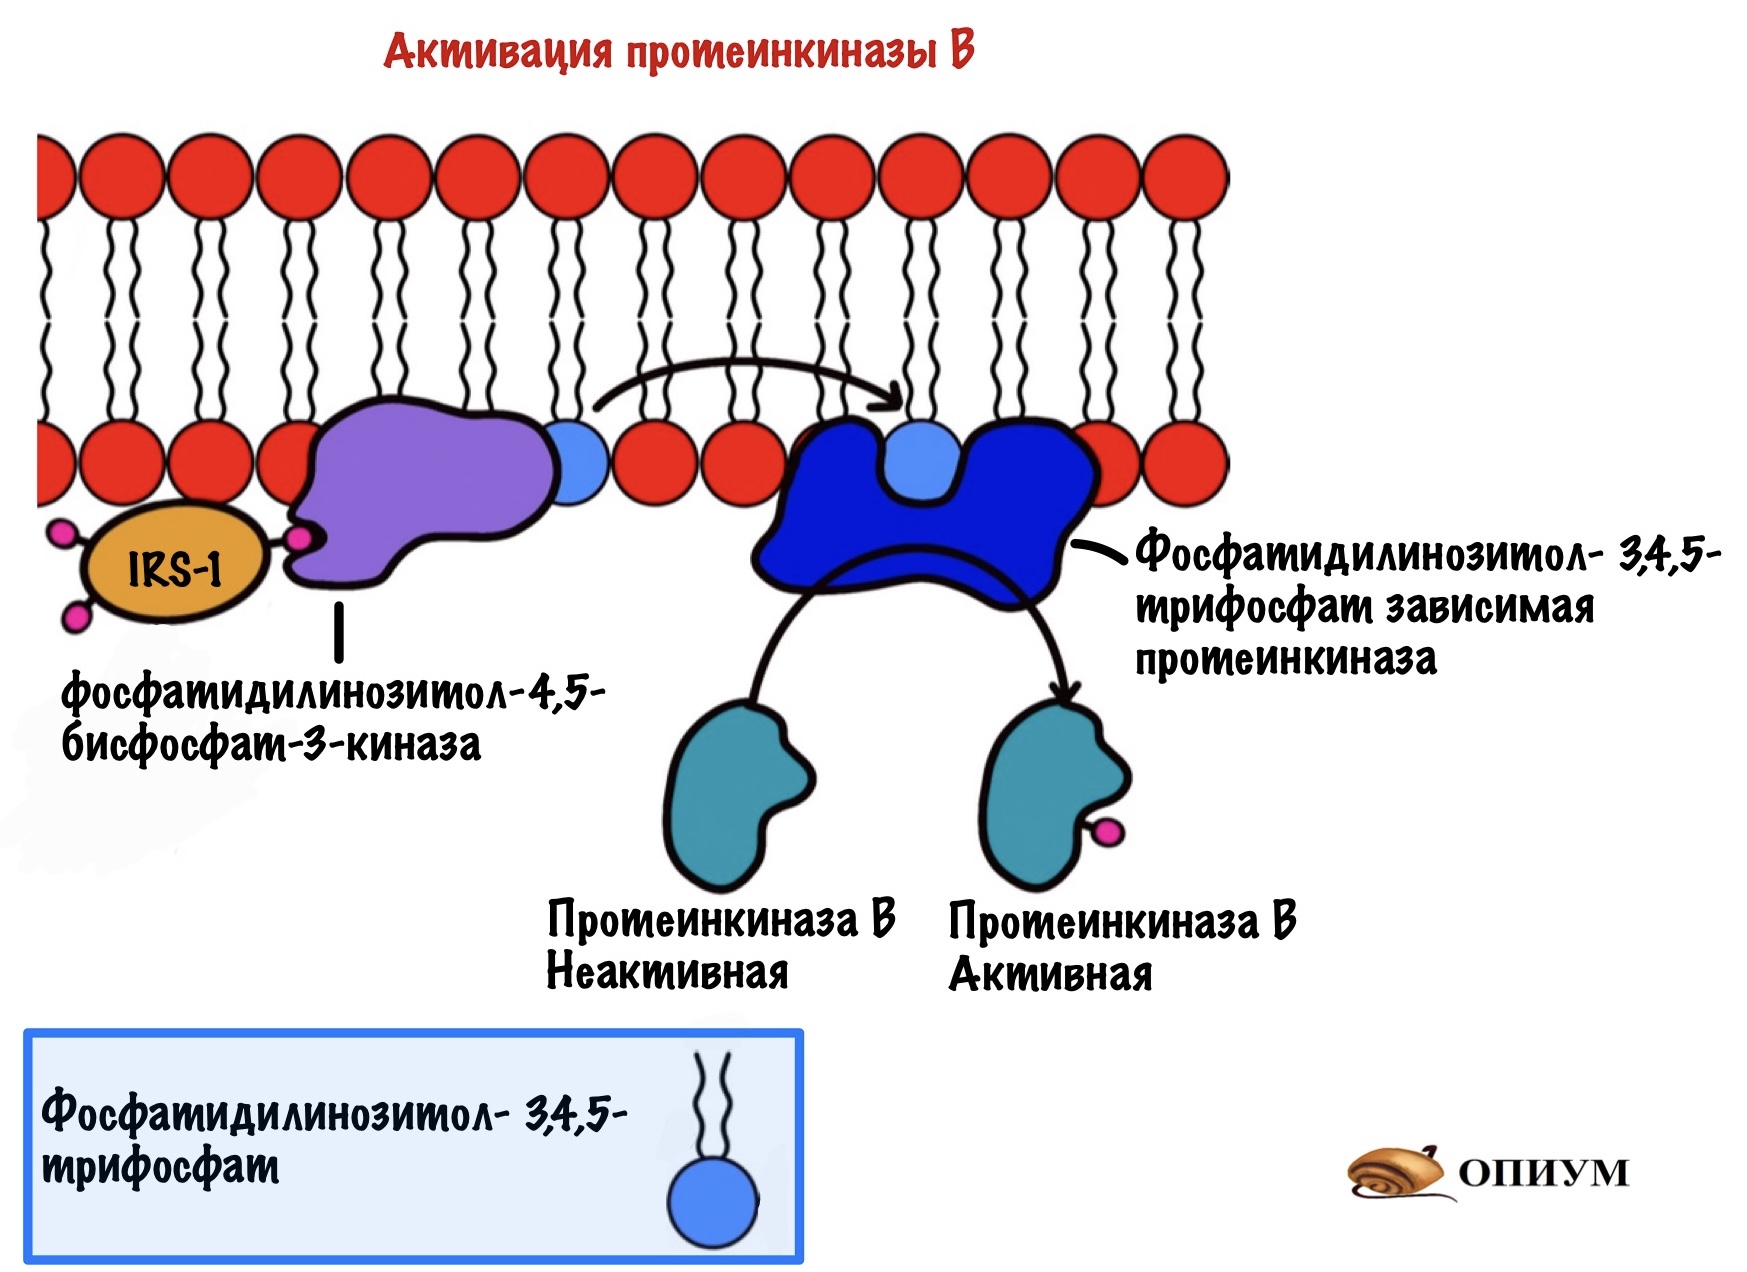 Протеинкиназа а. Рецептор протеинкиназа. Механизм активации протеинкиназы g. Протеинкиназа б. Активация протеинкиназы а.